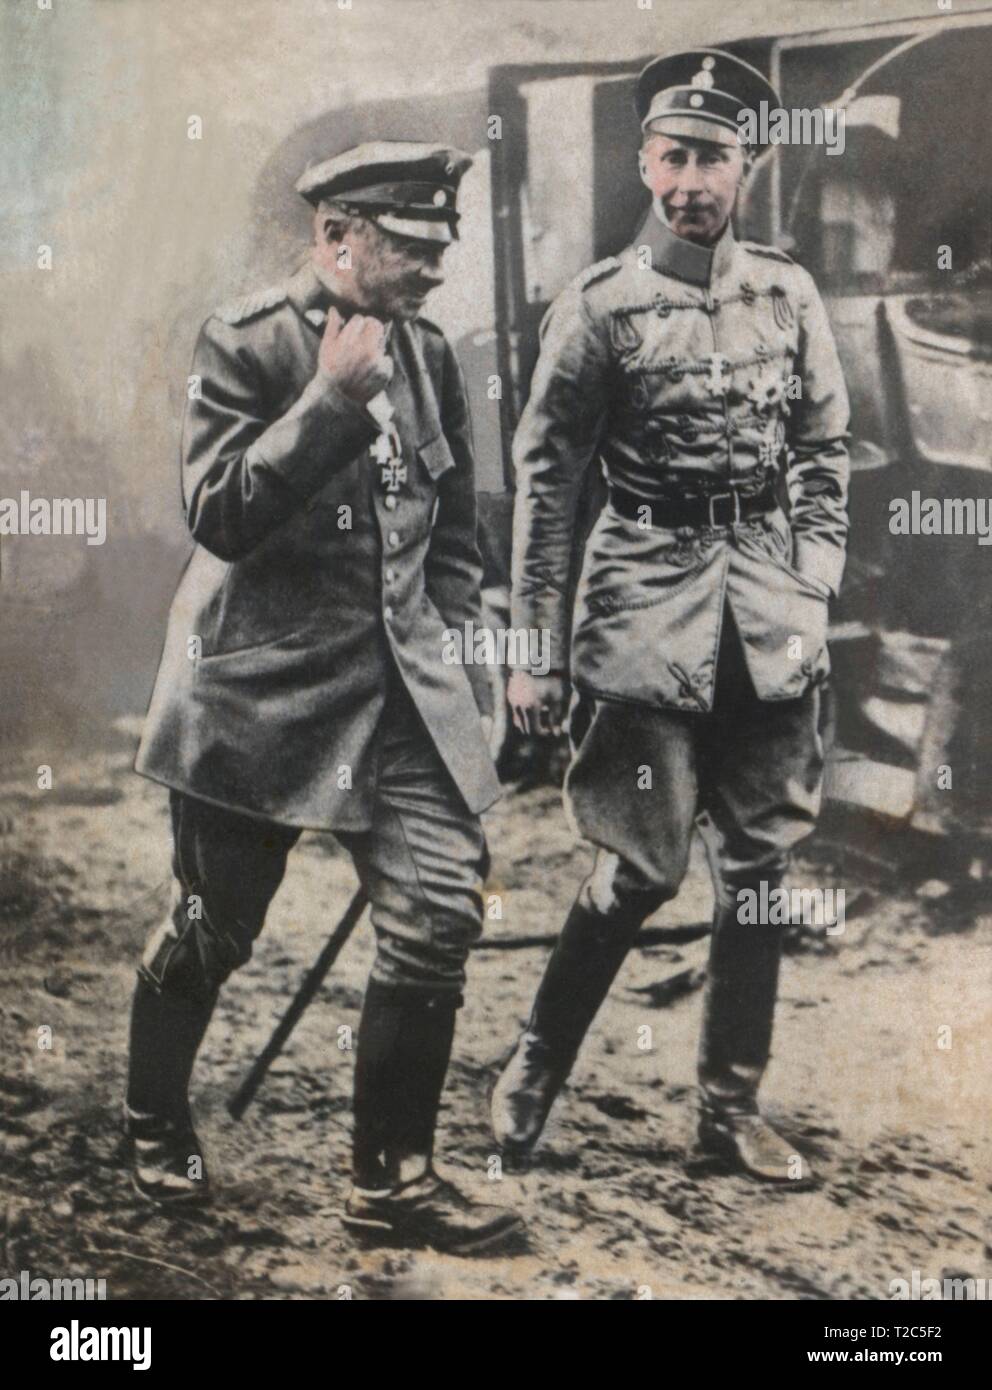 Primera guerra mundial (1914-1918). El kaiser Guillermo II de Alemania (1888-1918) y el rey Federico Augusto III de Sajonia (1865-1932) en campaña. Stock Photo